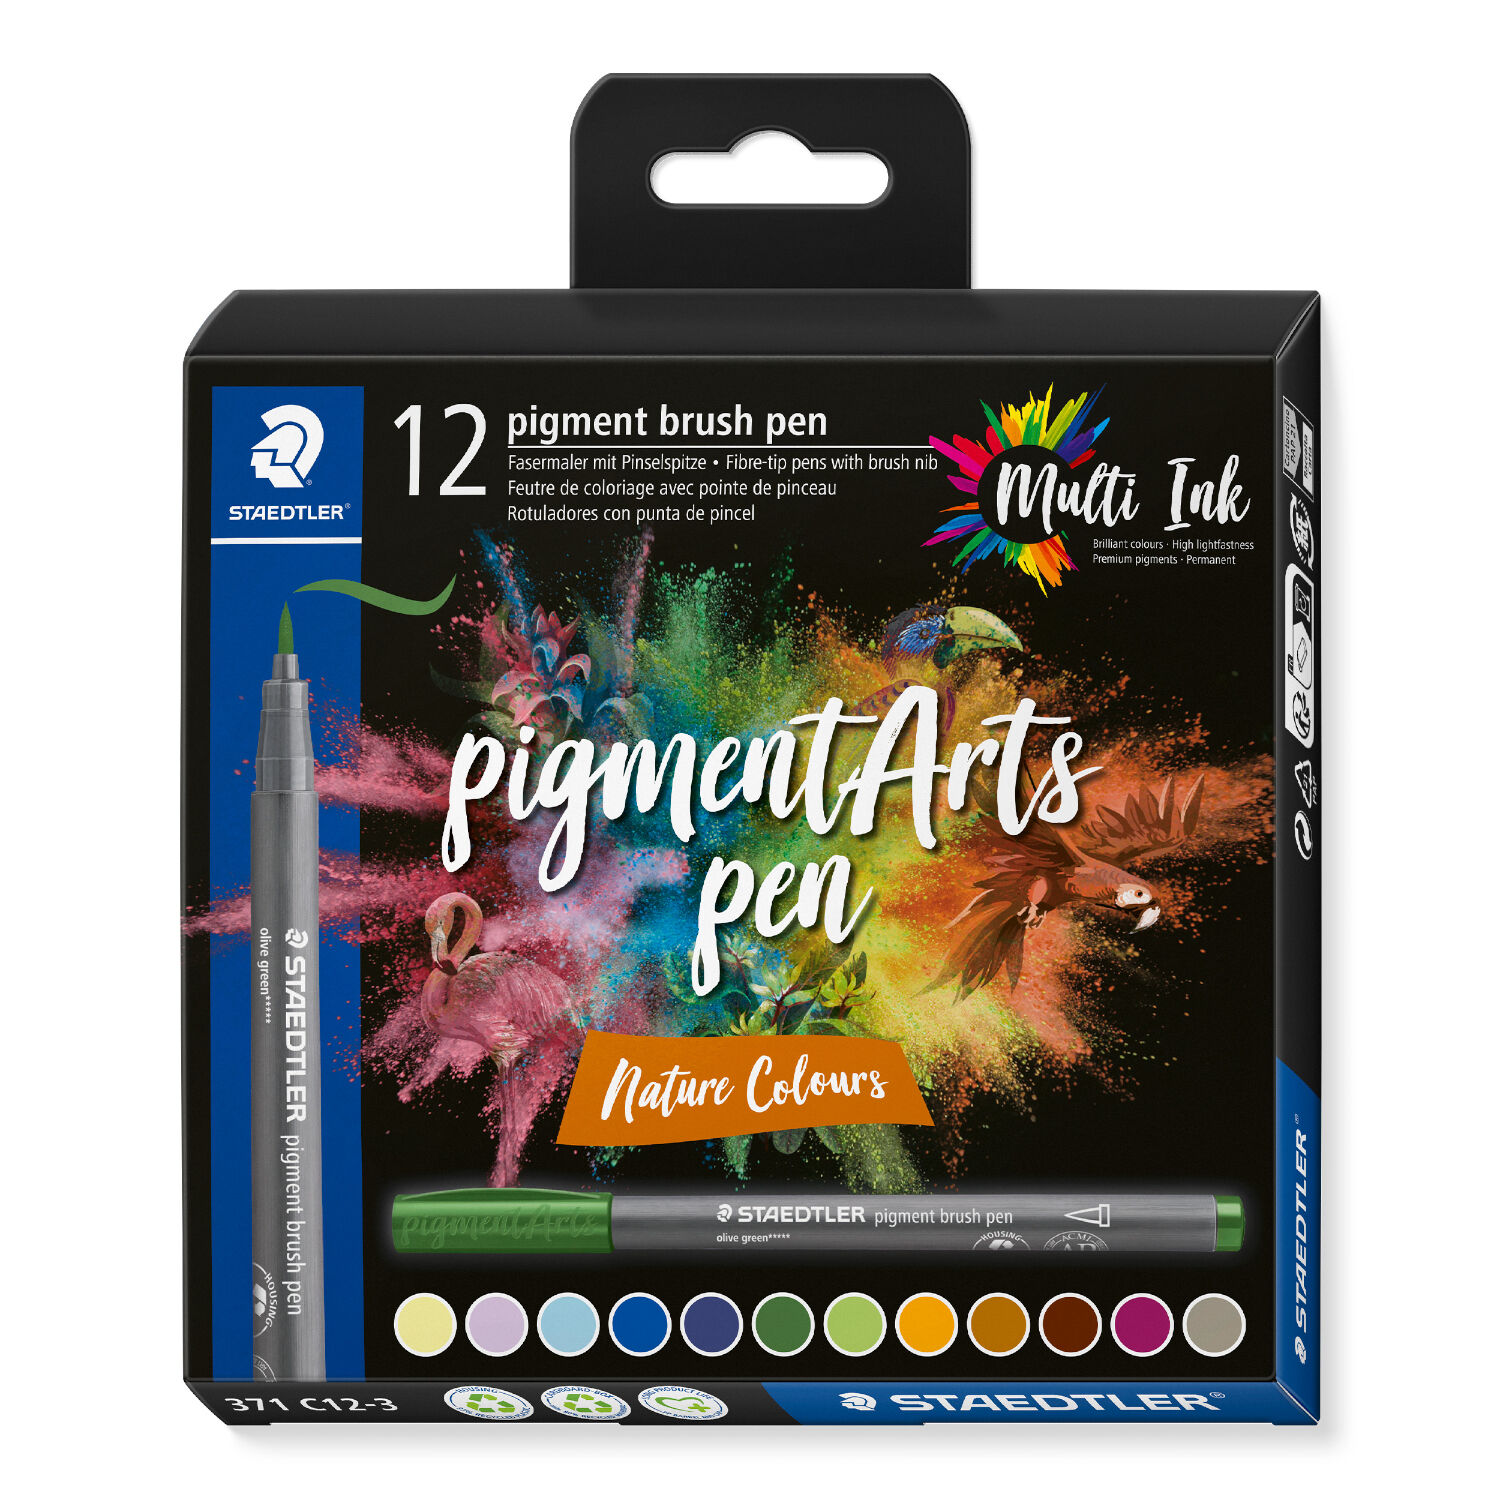 NEU Staedtler Pigment Brush Pen Set, Nature Colours, 12 Stifte